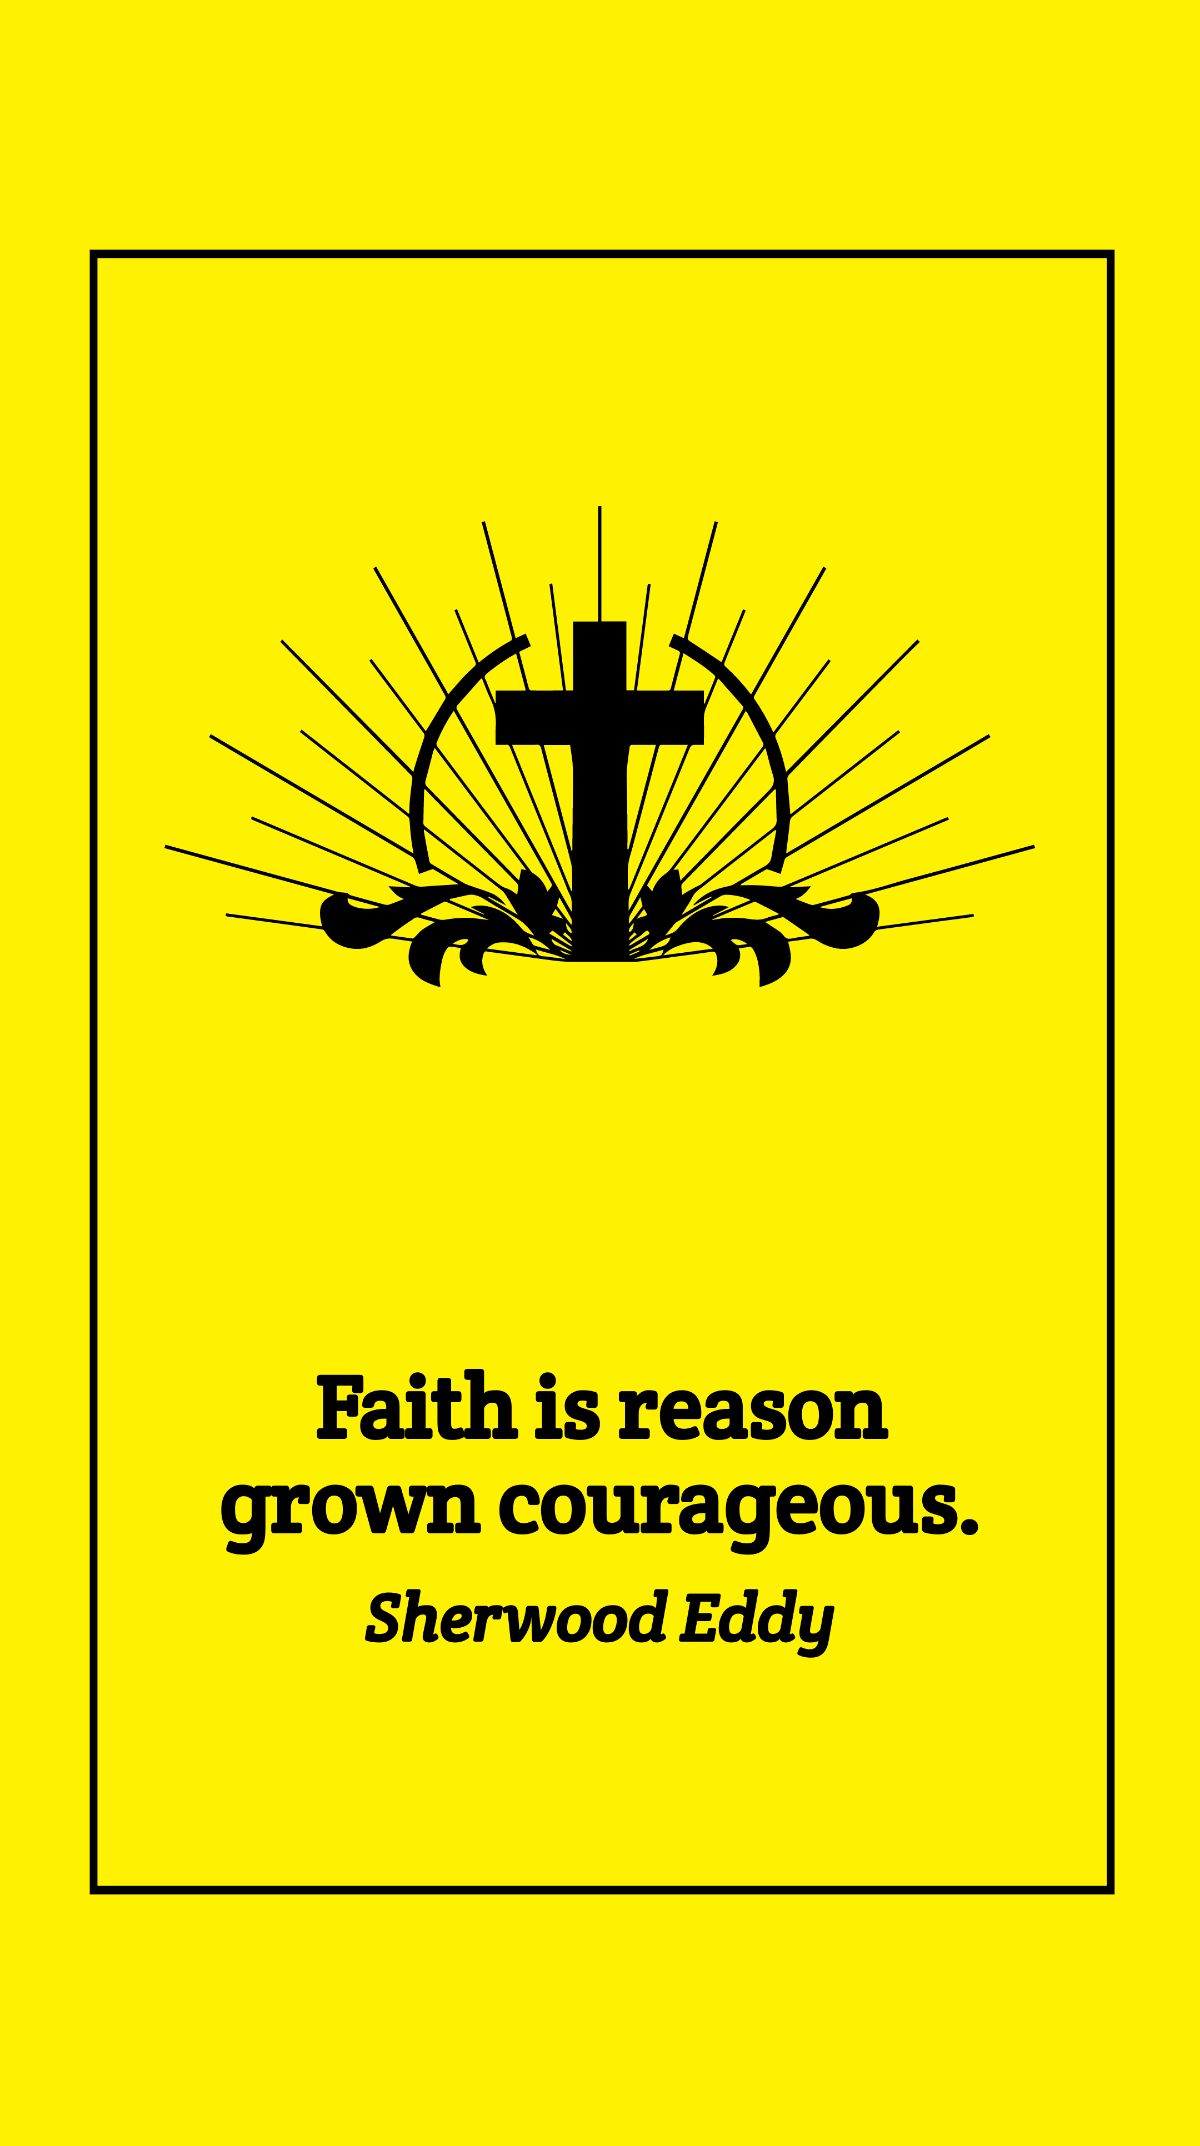 Sherwood Eddy - Faith is reason grown courageous. Template